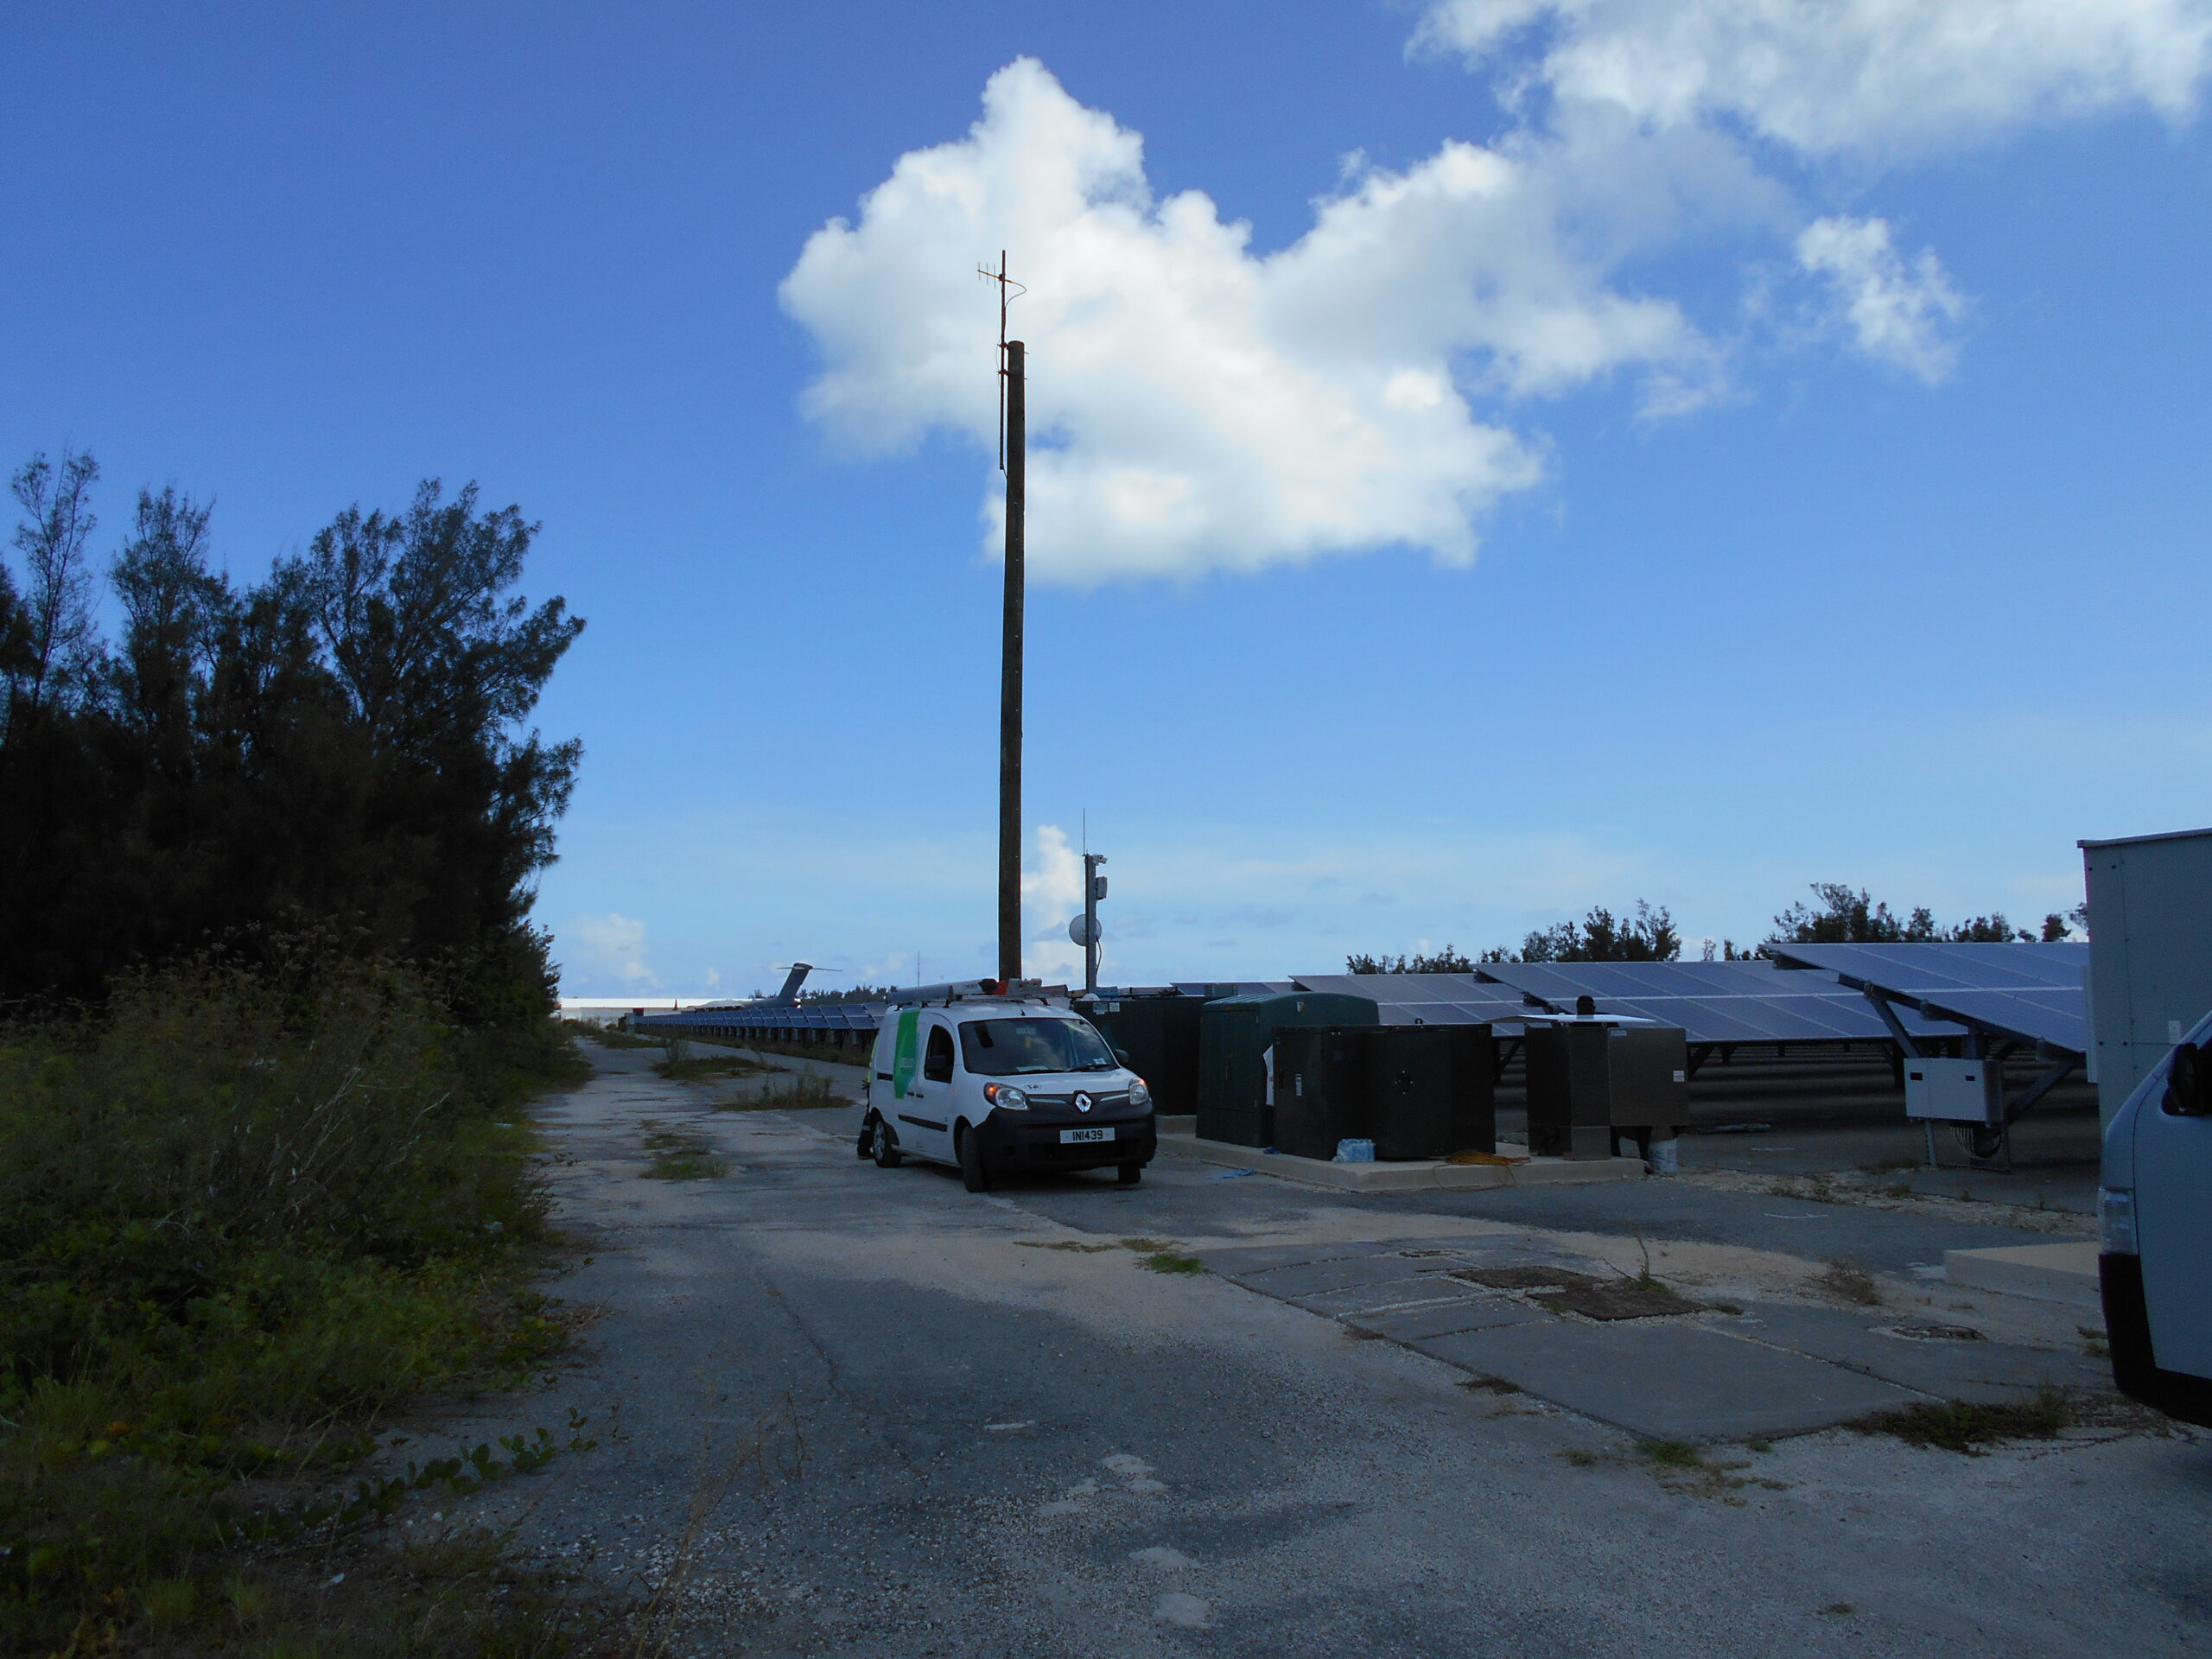 pre-development look at future solar farm in Bermuda